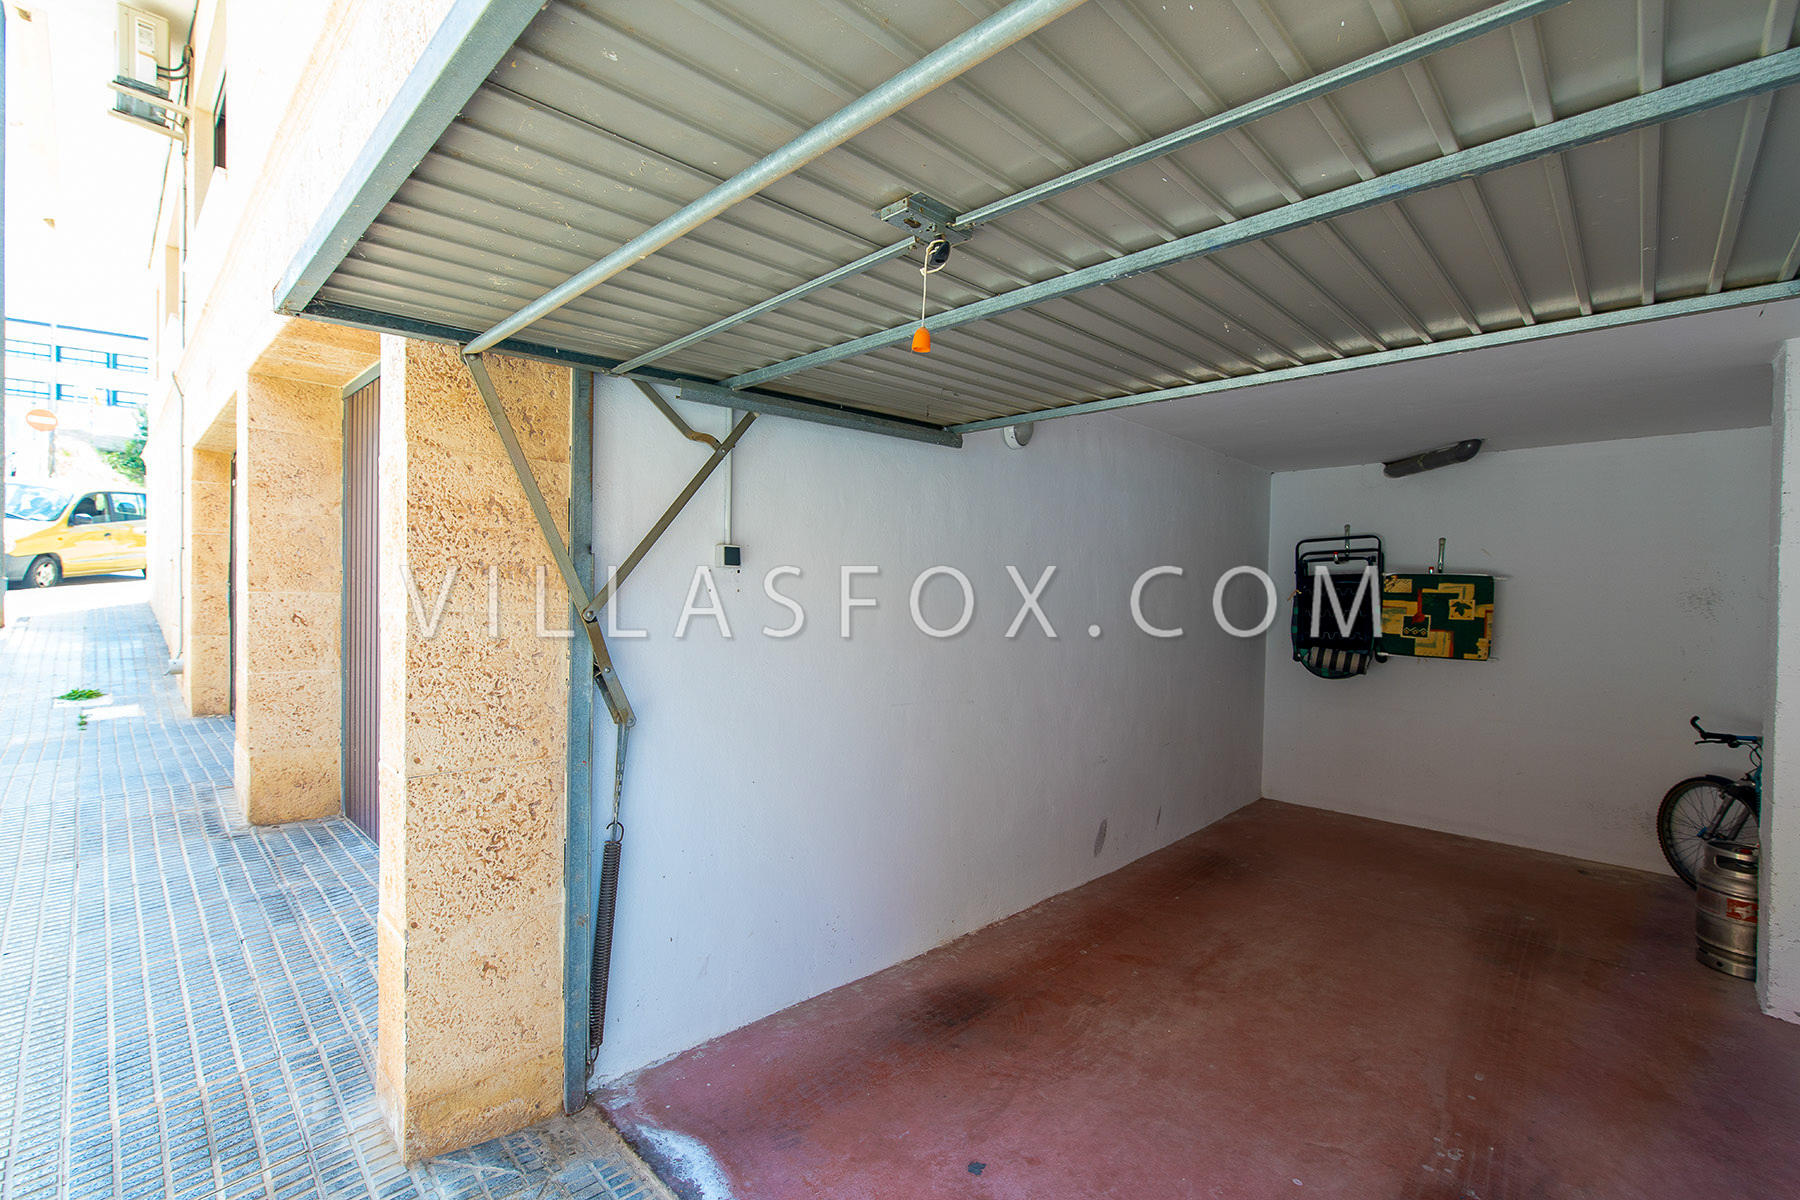 Vende-se apartamento de 3 quartos San Miguel de Salinas centro da cidade Villas Fox-04